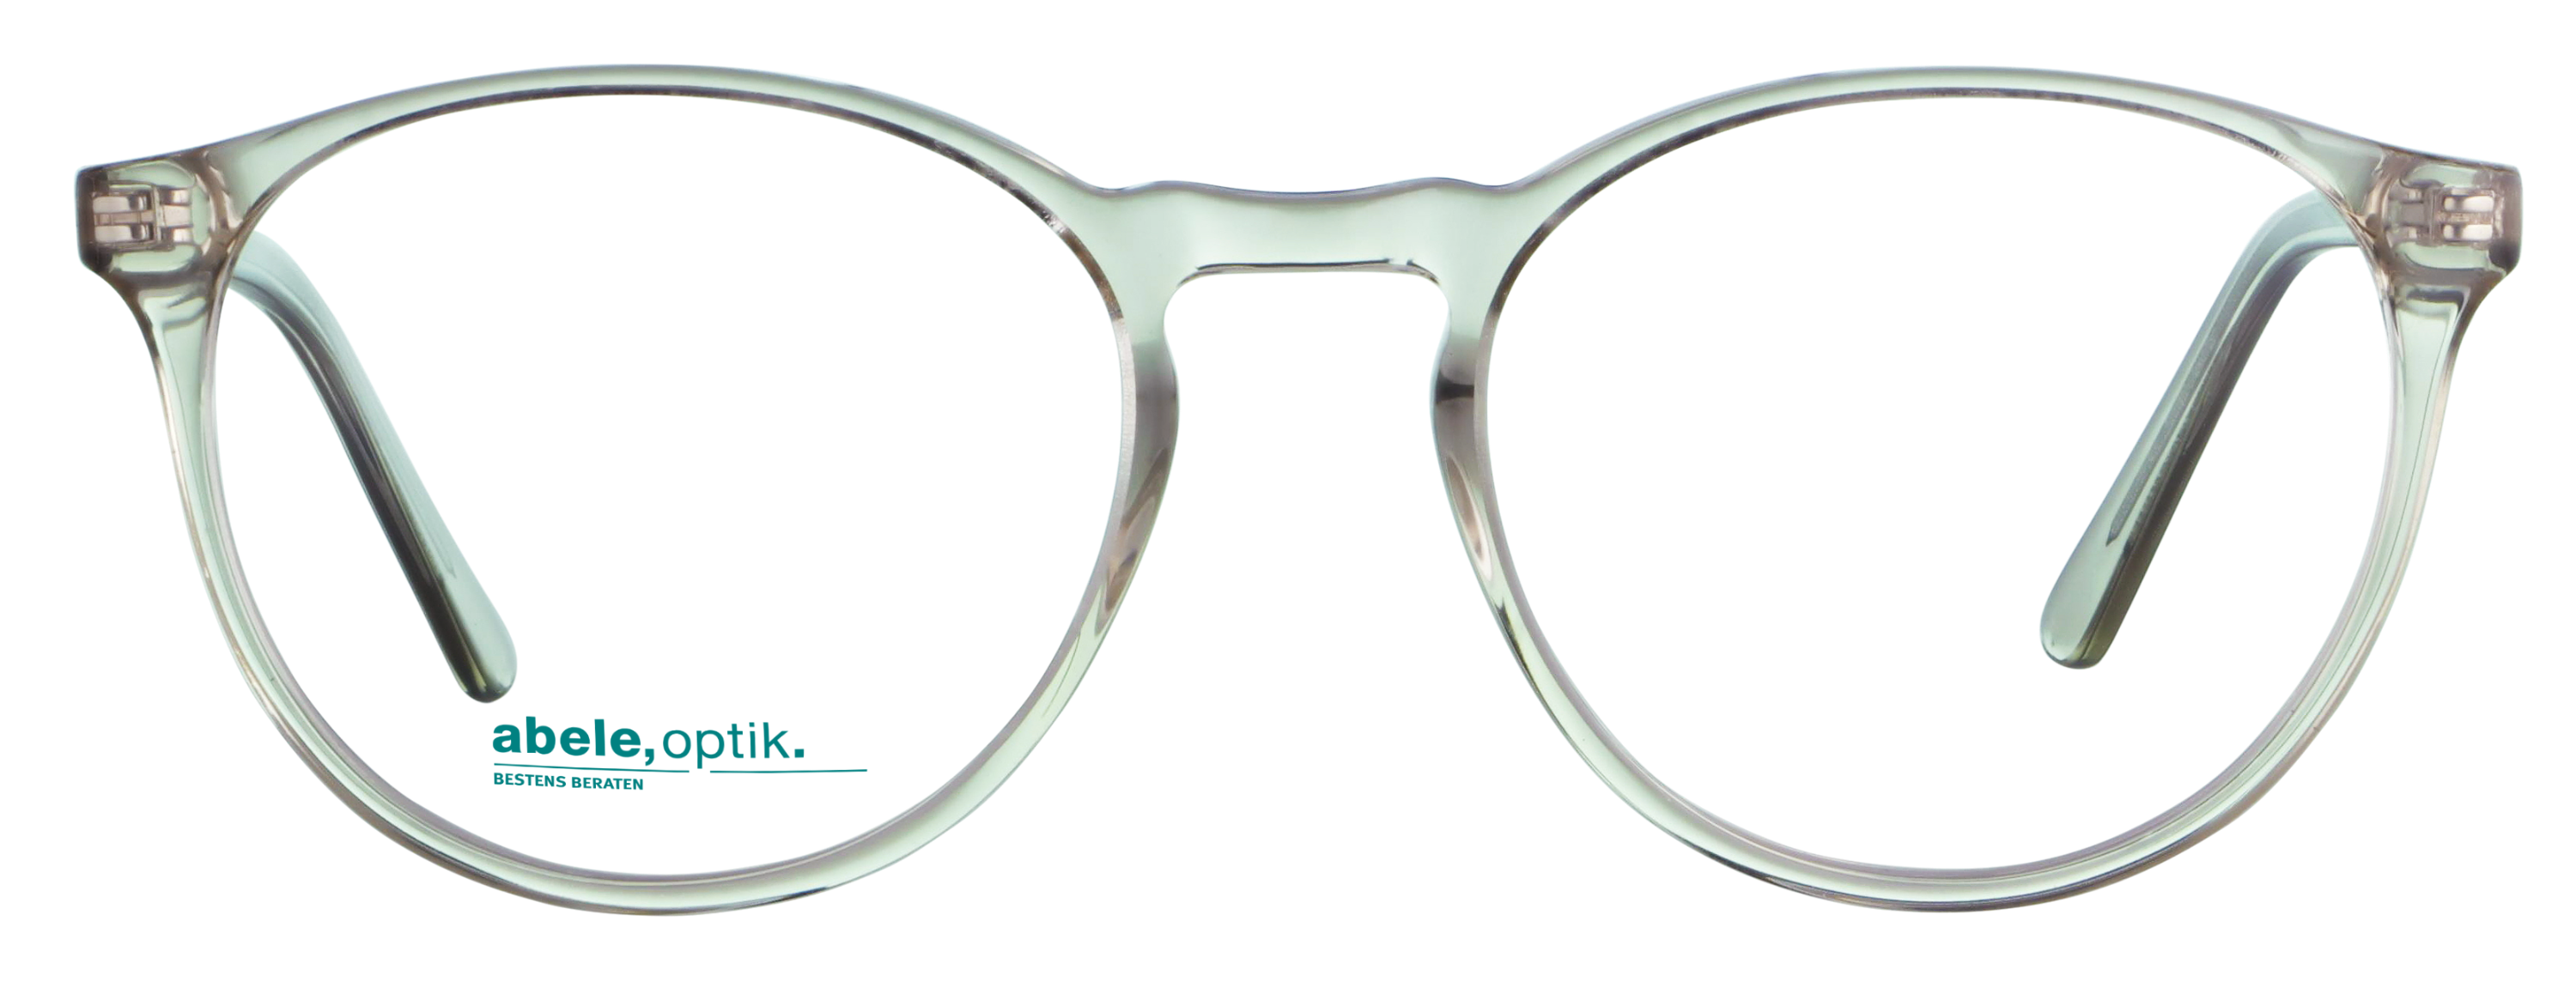 Das Bild zeigt die Korrektionsbrille 141772 von der Marke Abele Optik in beige transparent.